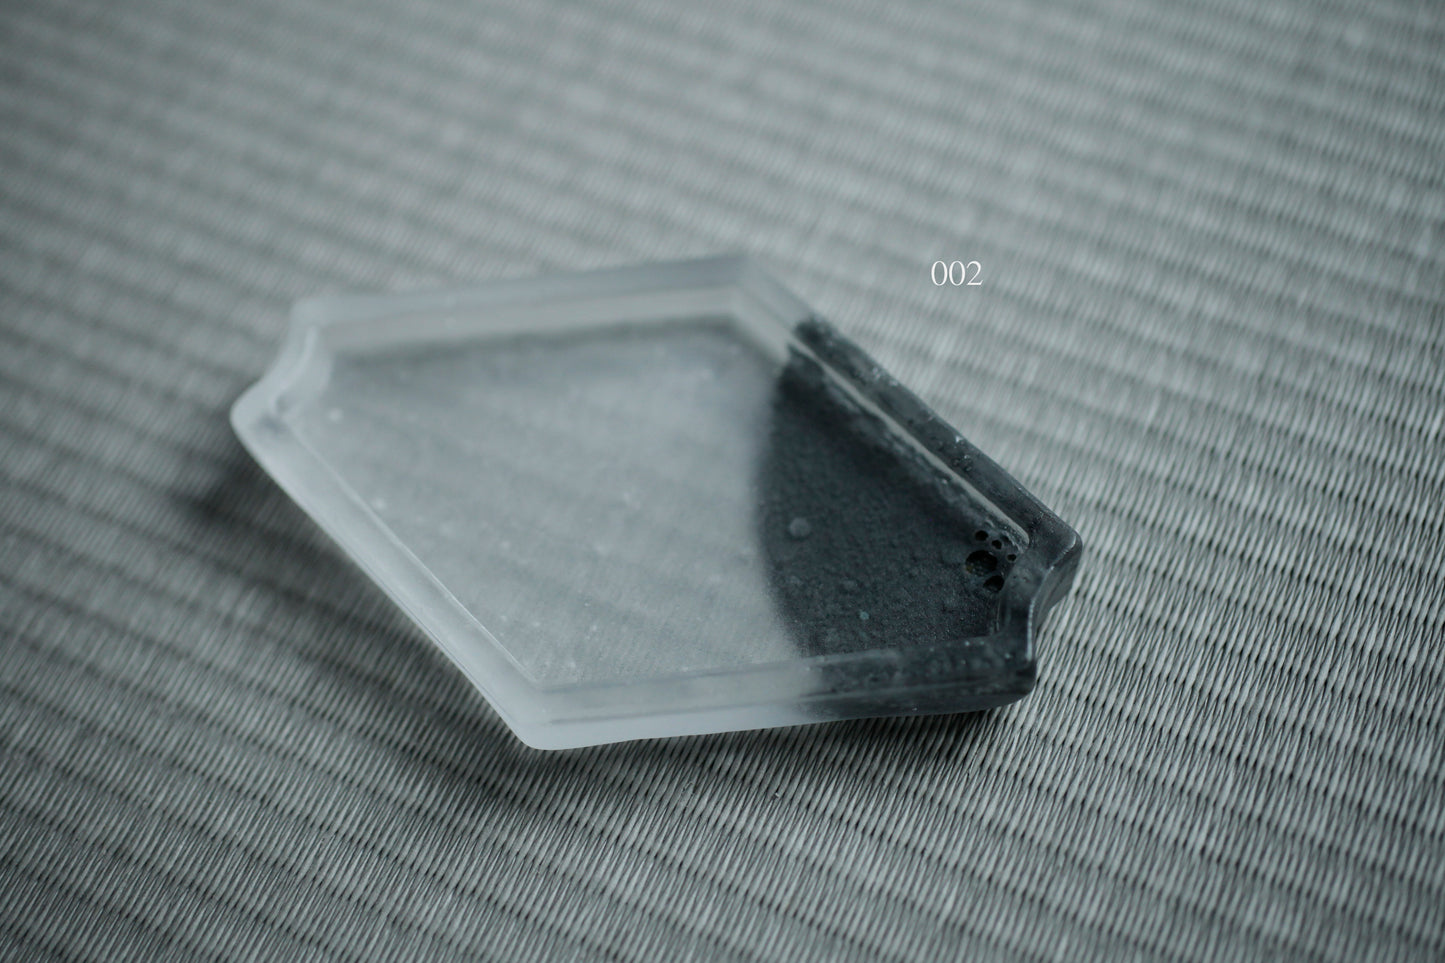 佐藤幸惠 鑄造玻璃菓子皿-菱形